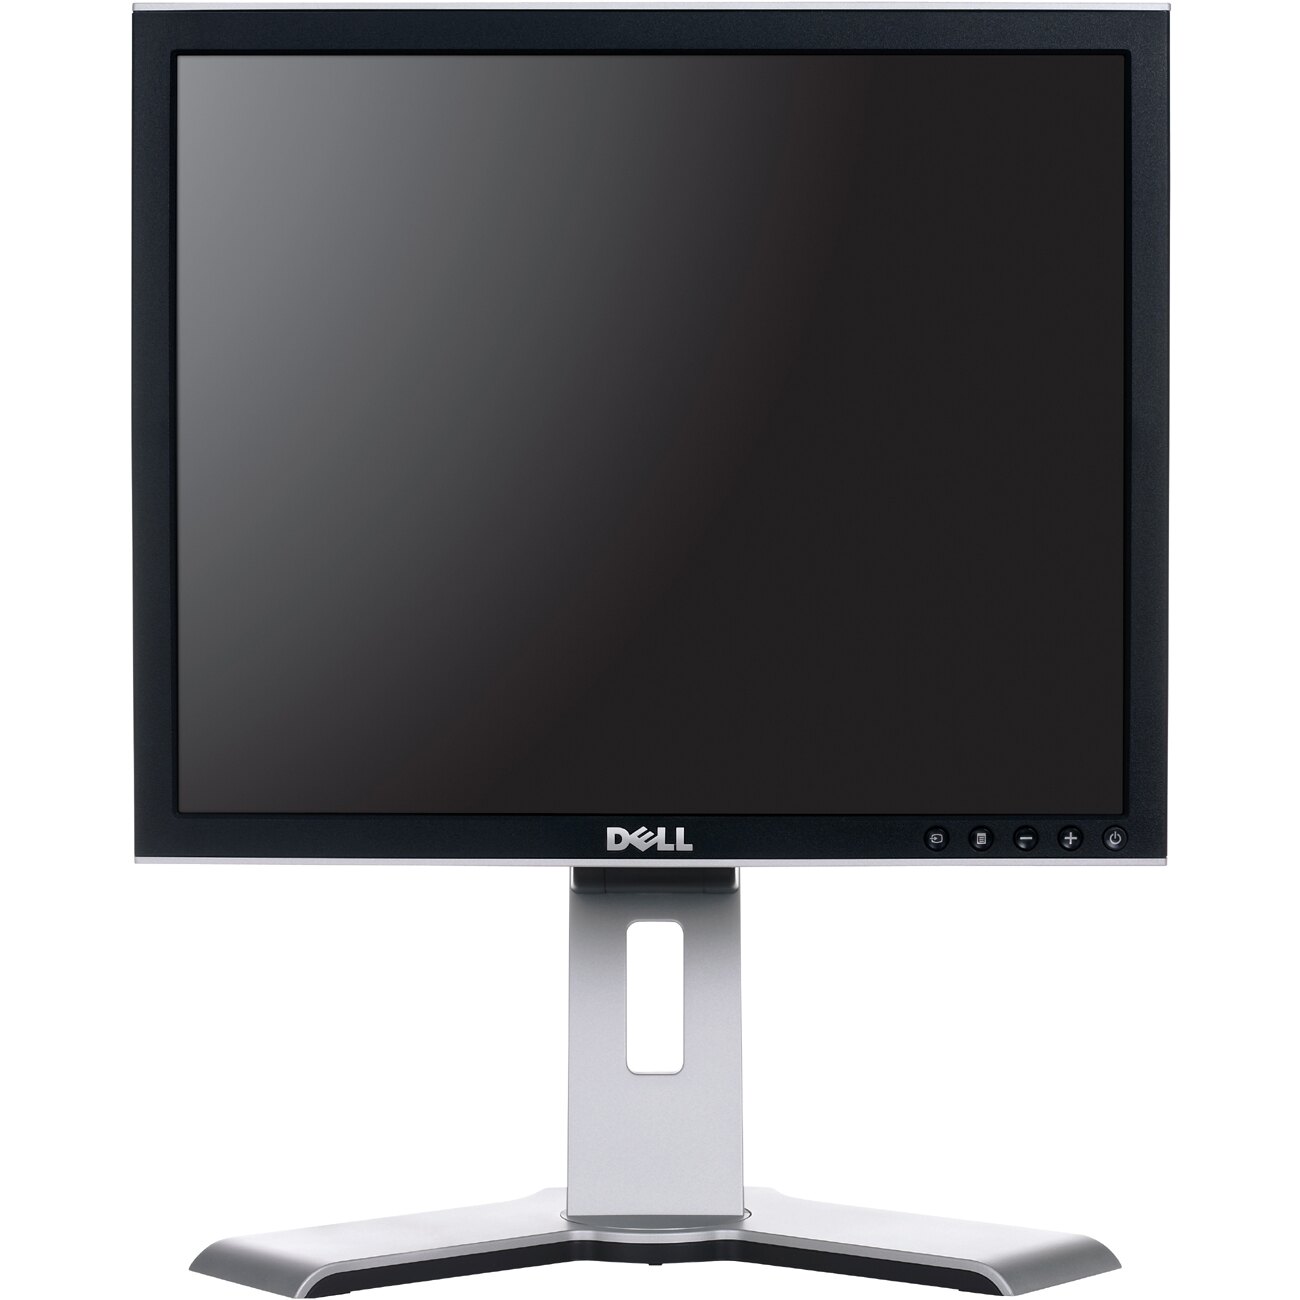 Dell UltraSharp 1707FPc